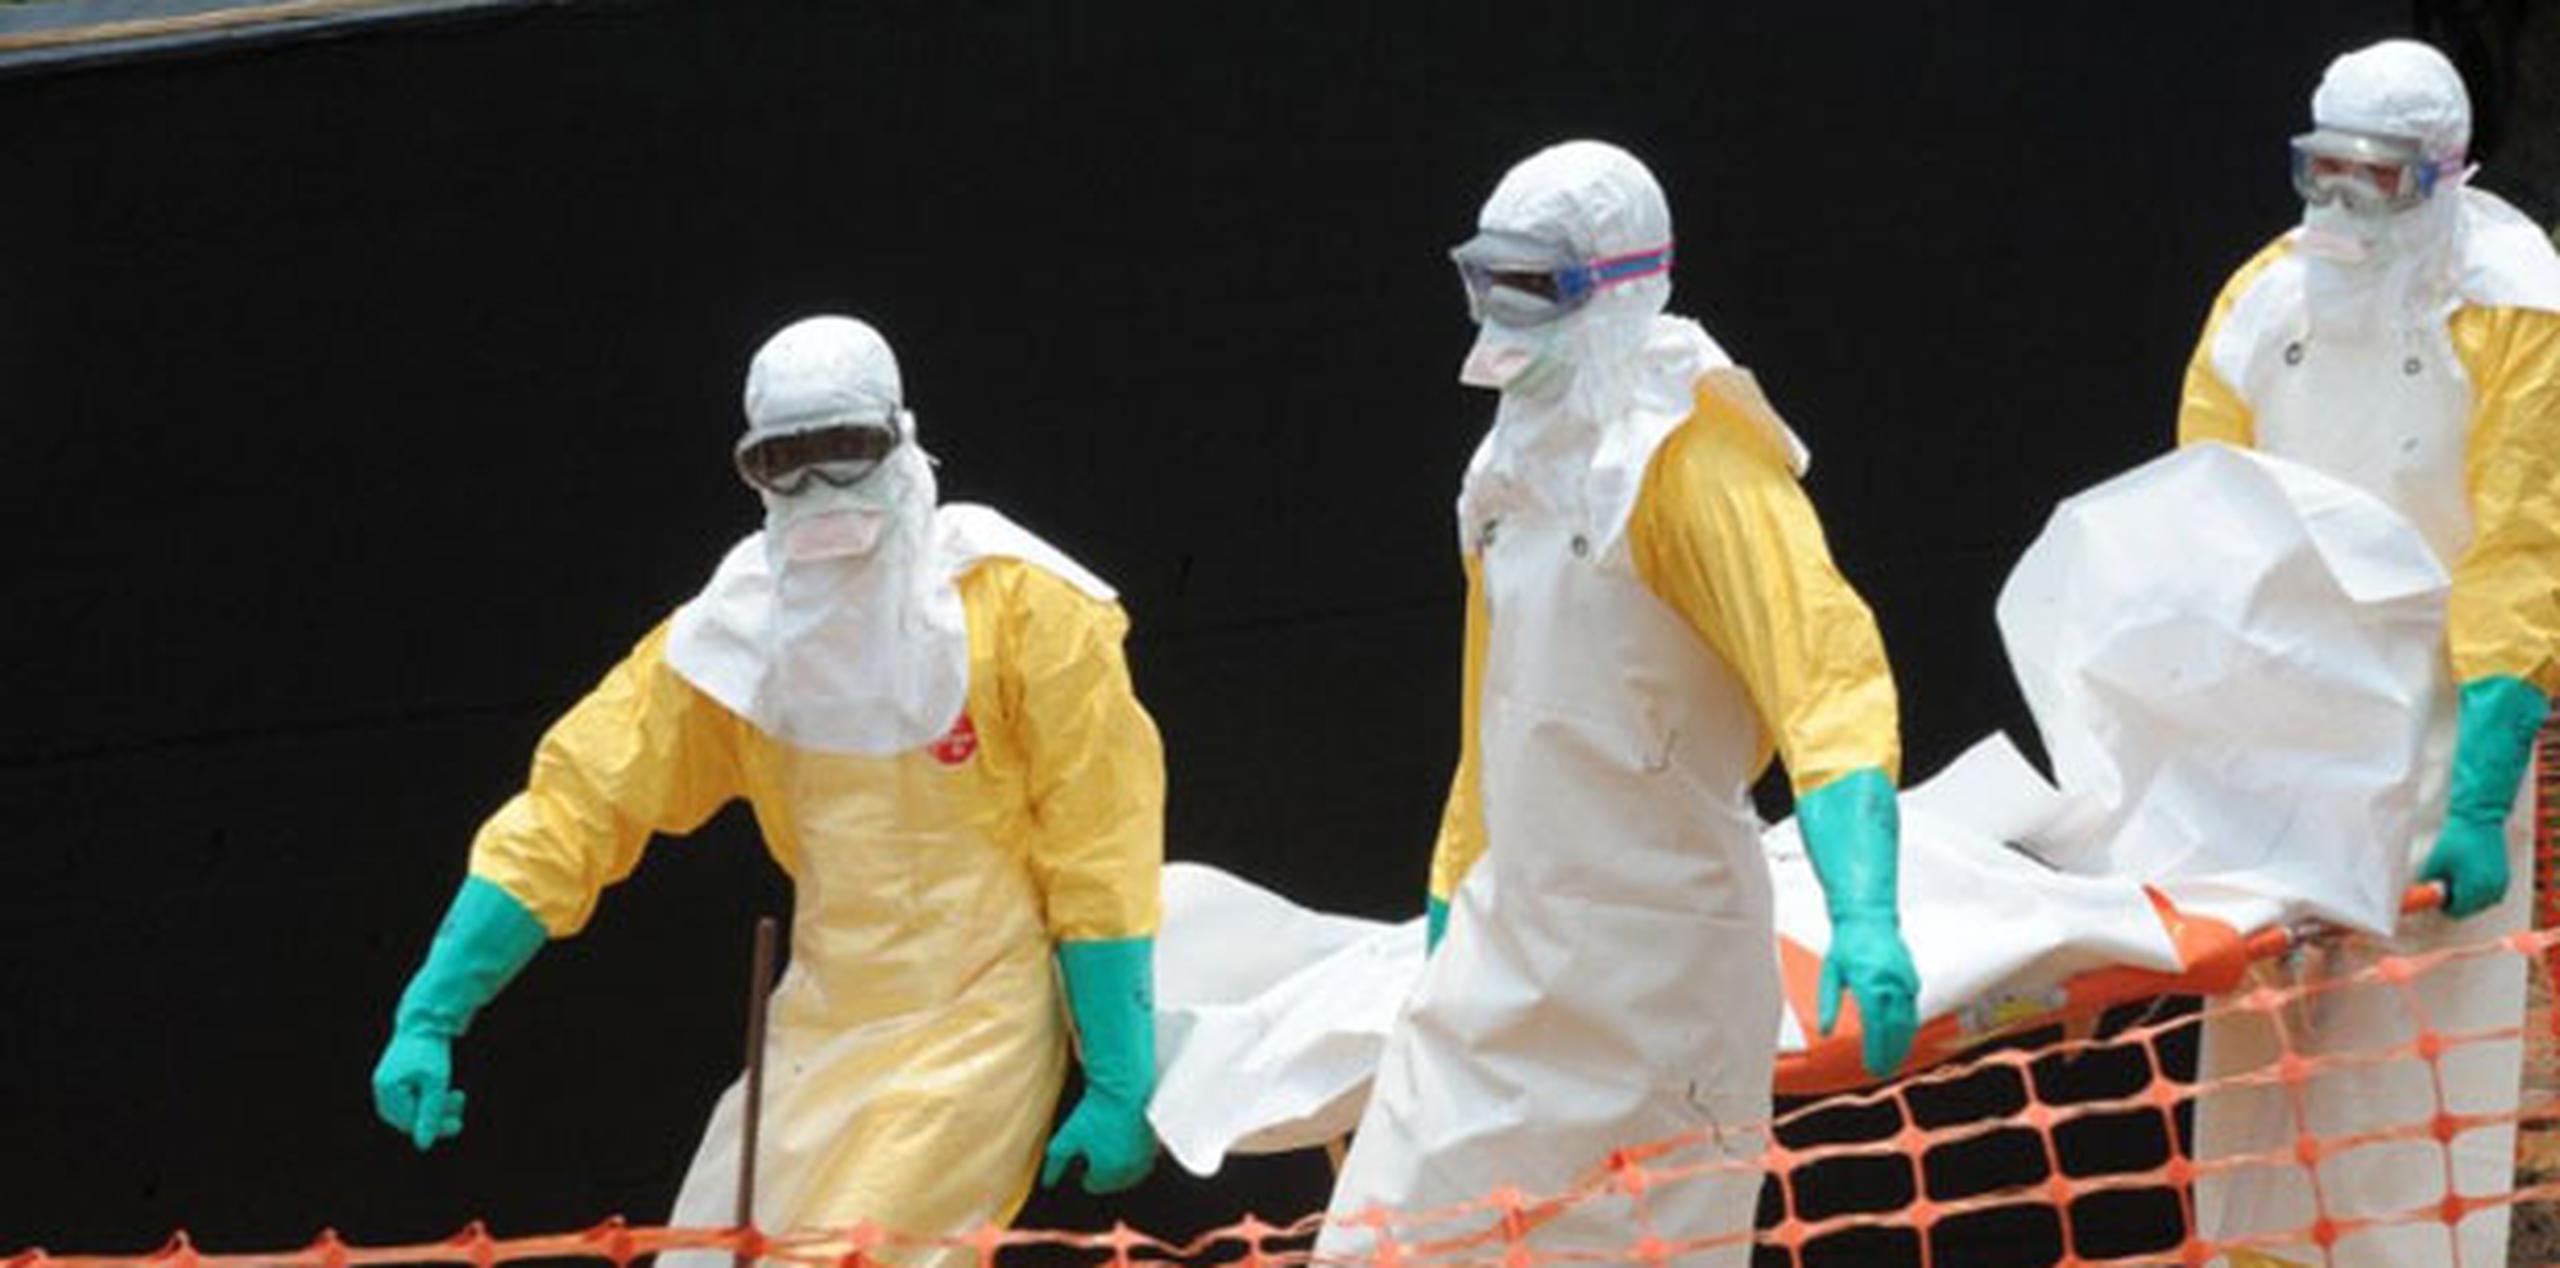 La OMS registró más de 4,700 muertes por ébola en Liberia, más que en cualquier otro país afectado. En total, África occidental sufrió más de 11,000 bajas por la pandemia. (Archivo)